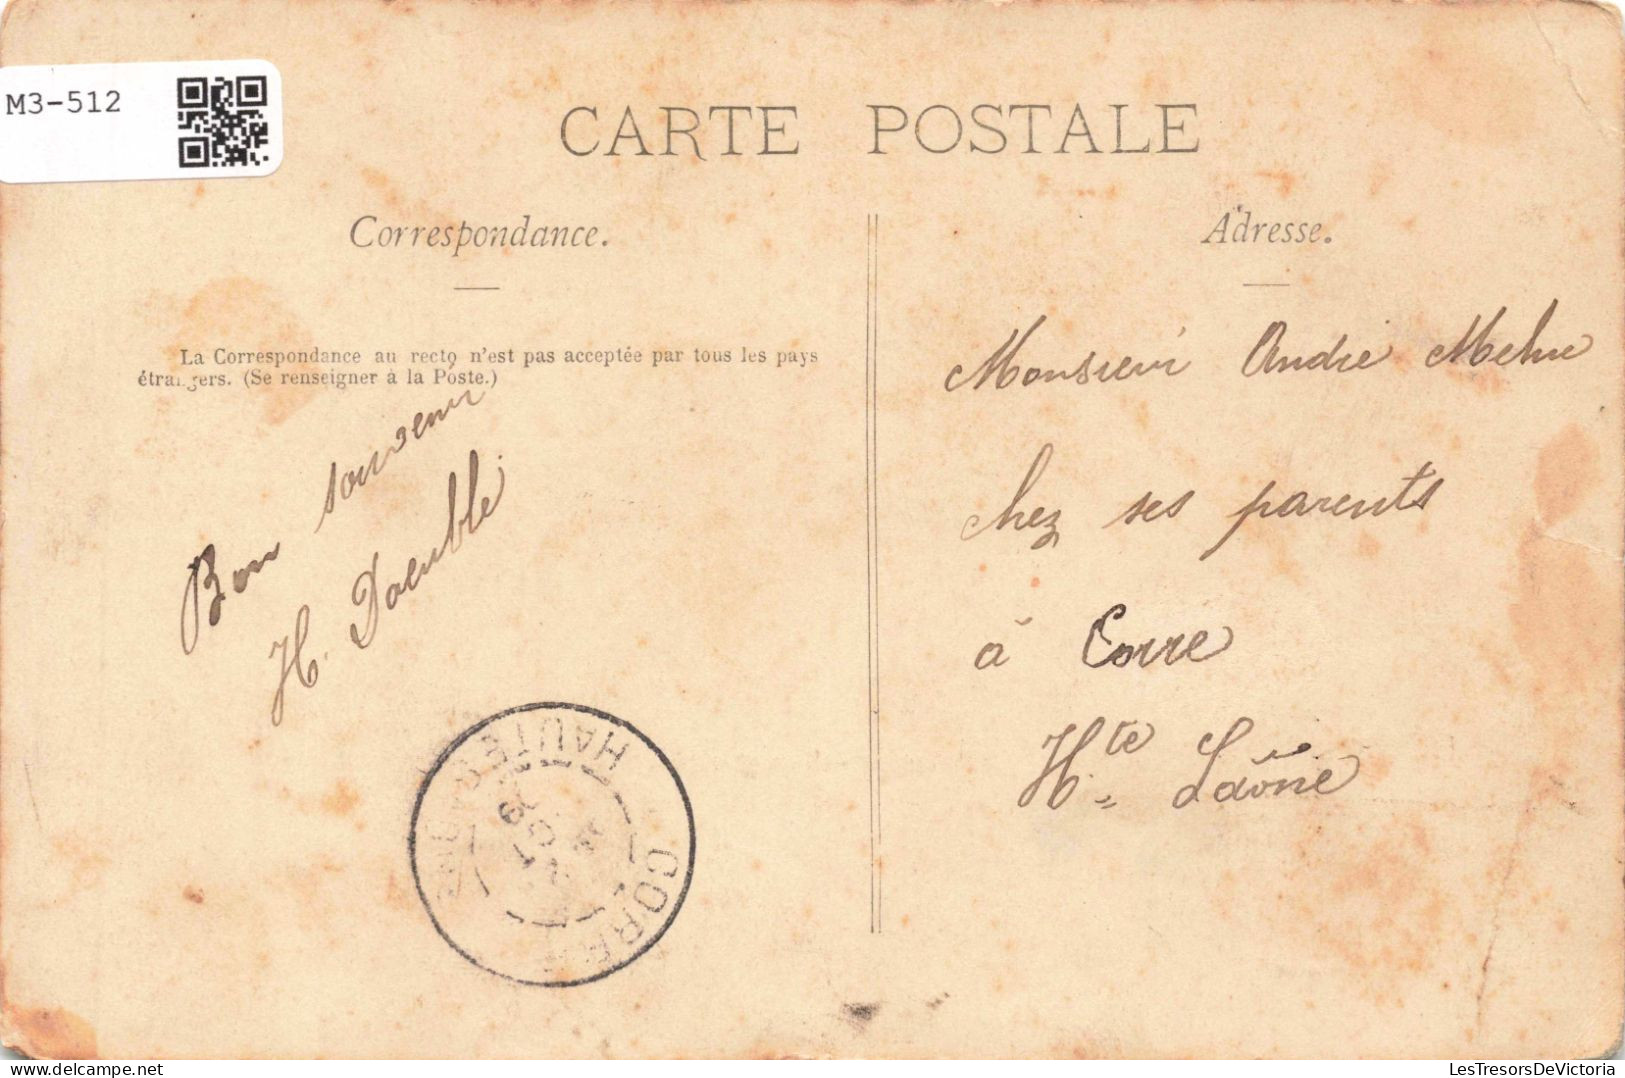 FRANCE - Mirecourt - Vue Générale - Clocher - Carte Postale Ancienne - Mirecourt